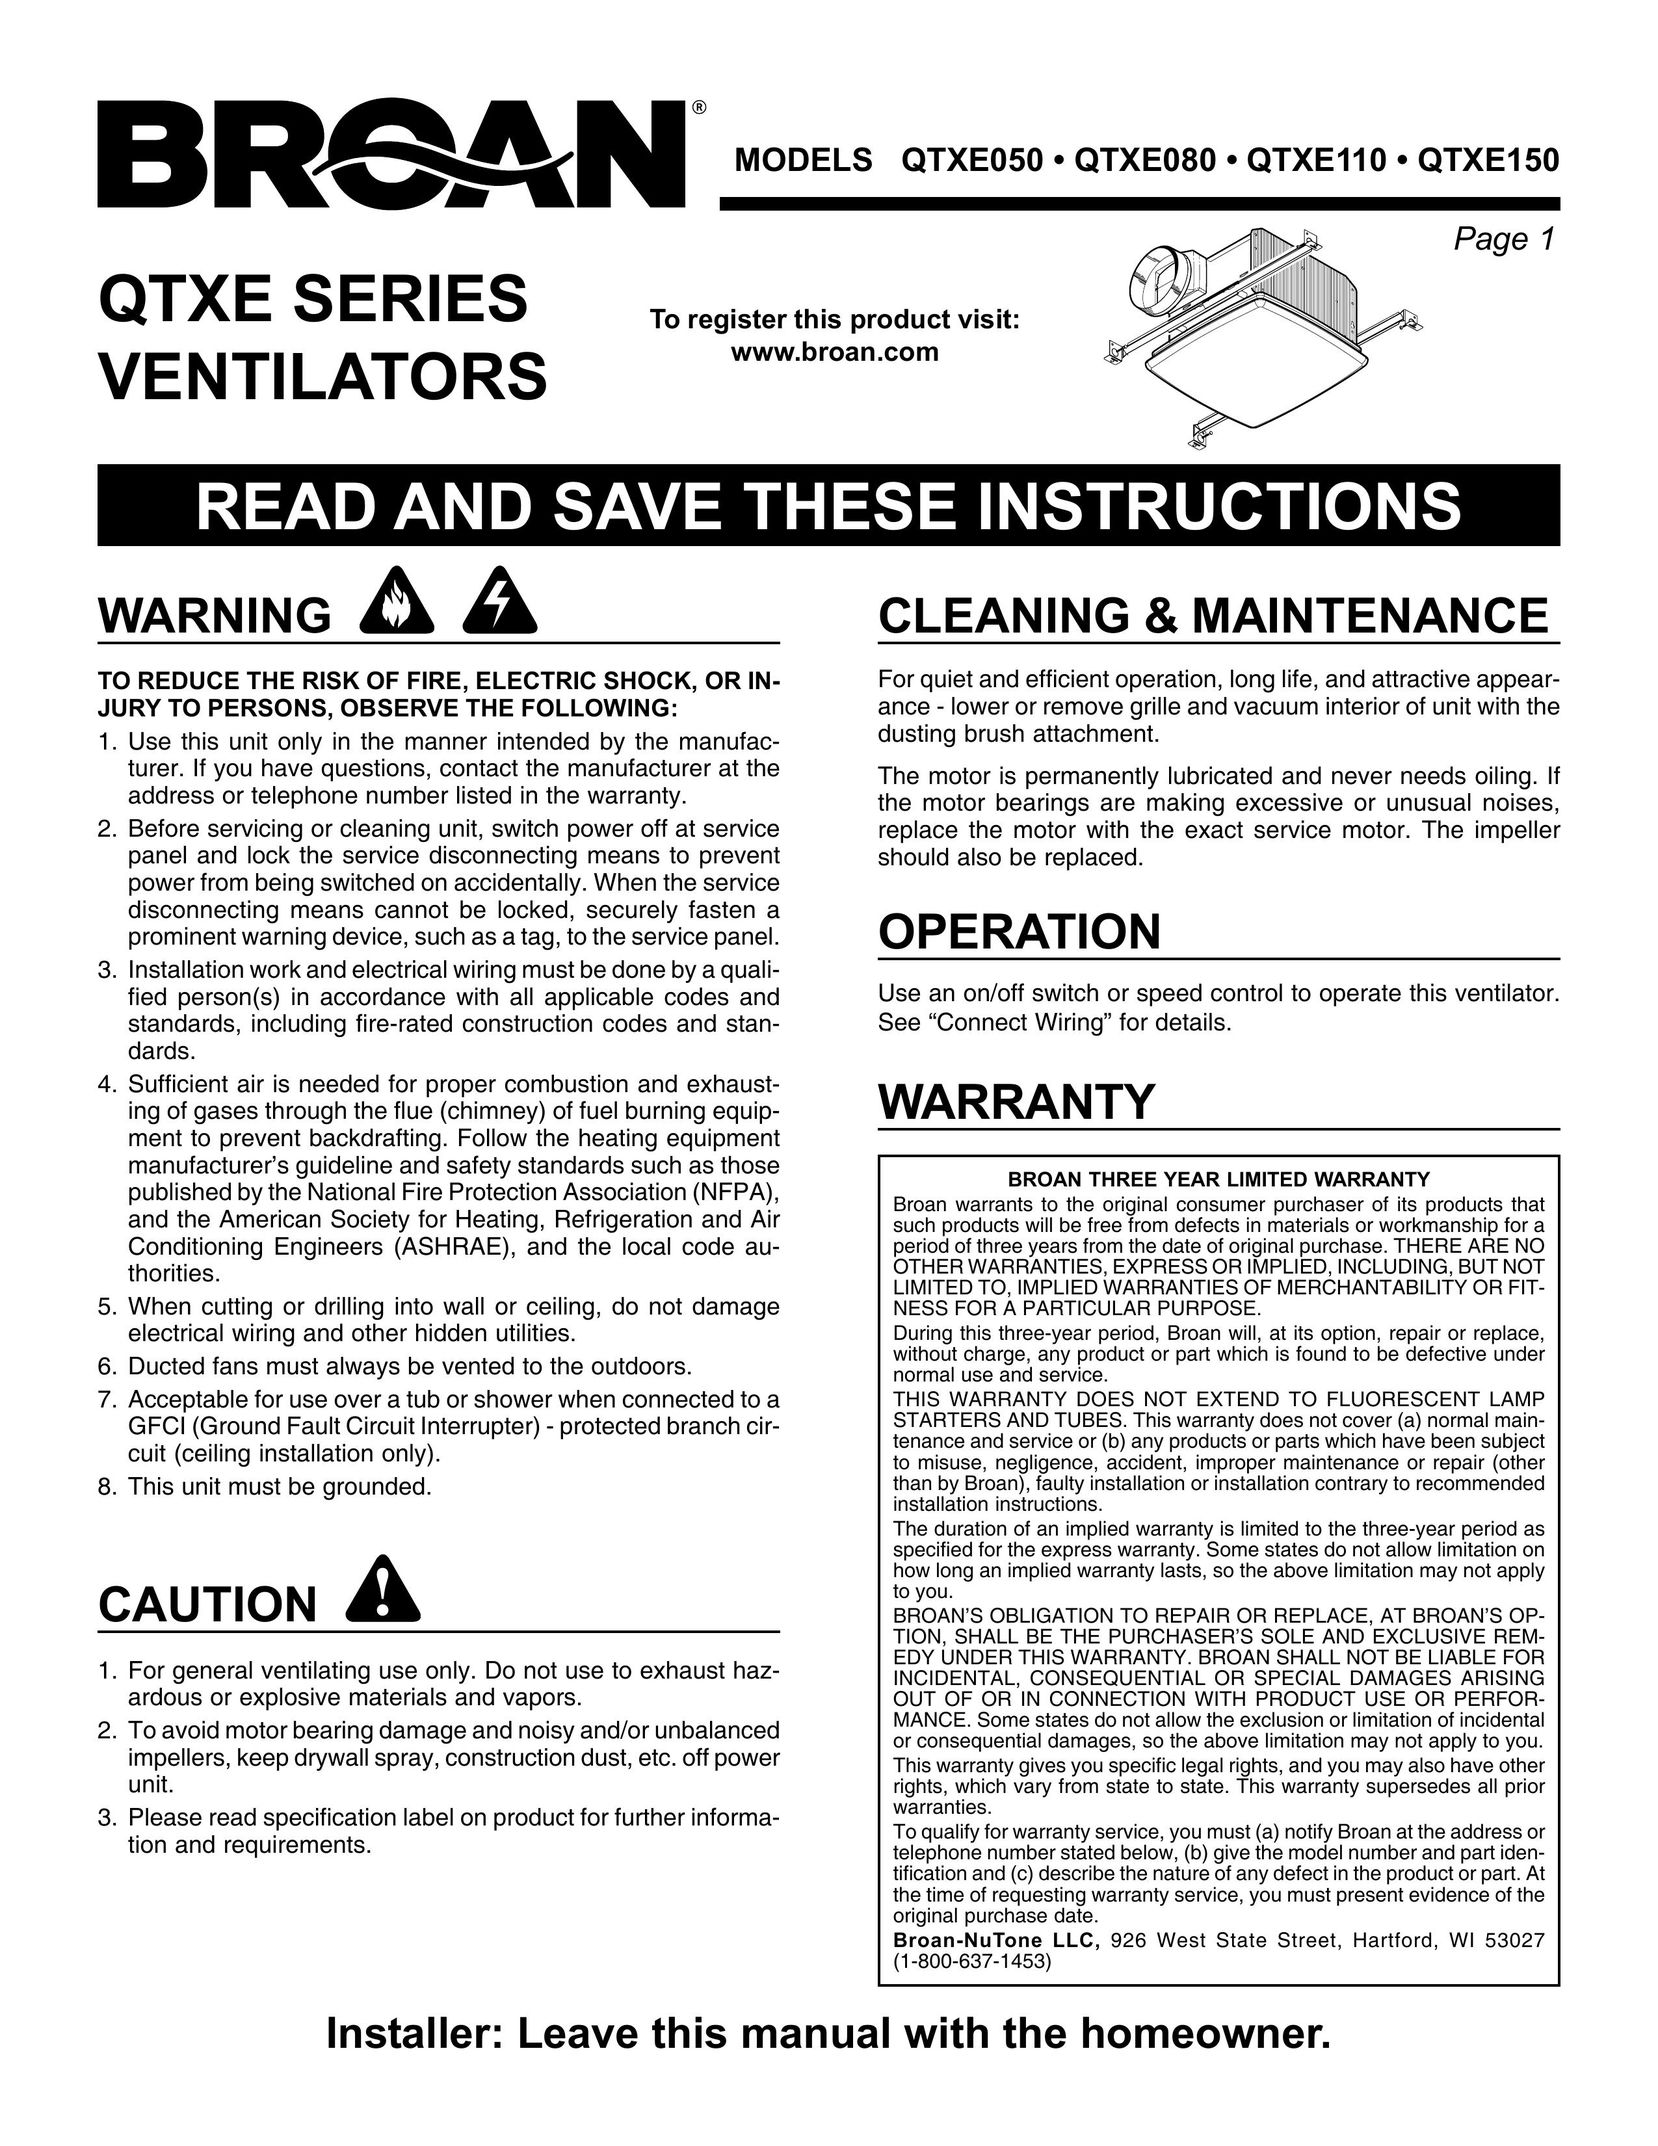 Broan QTXE050 Fan User Manual